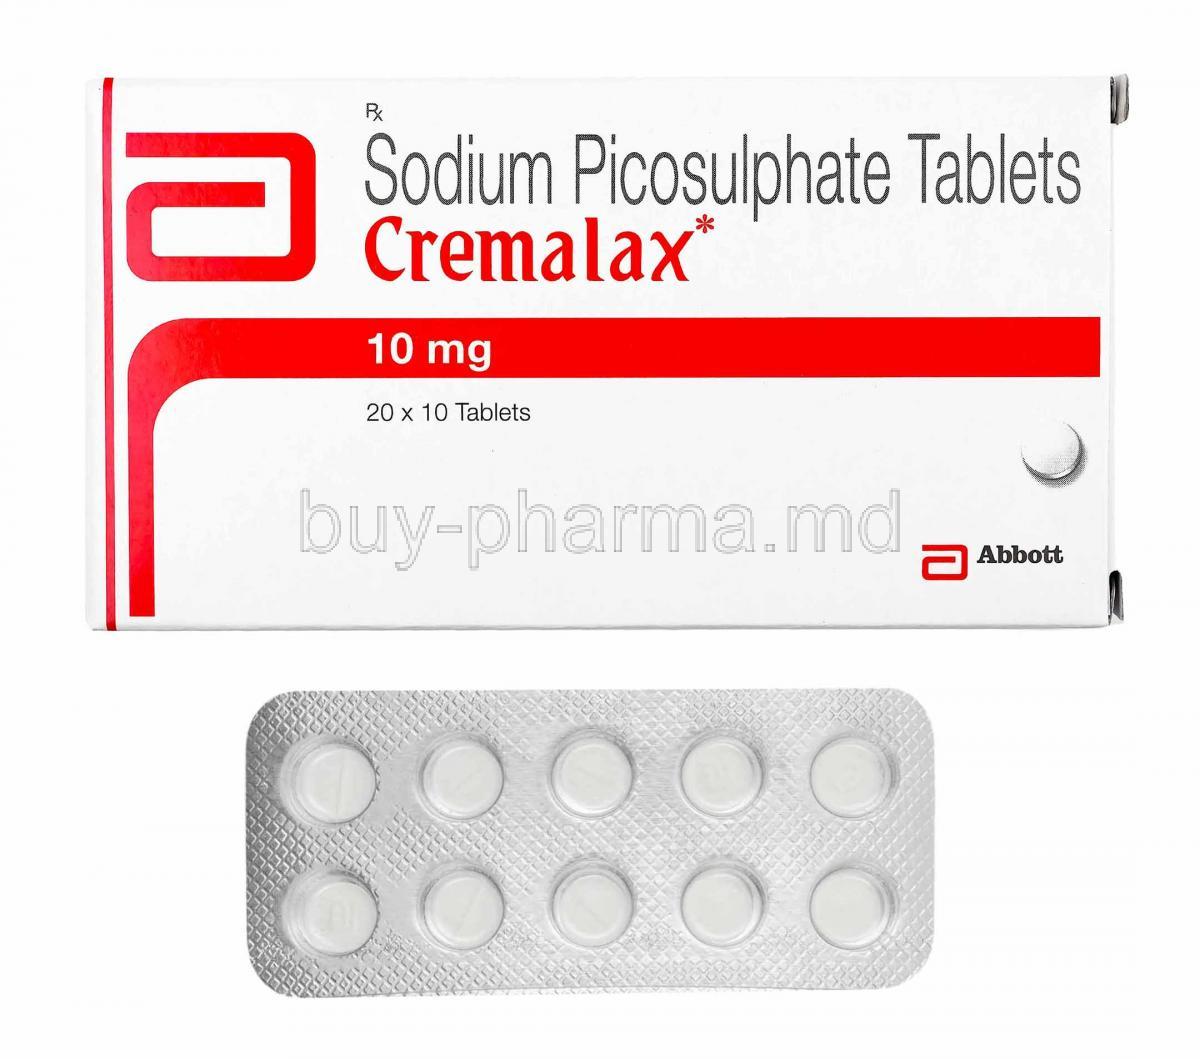 Cremalax, Sodium Picosulfate box and tablets